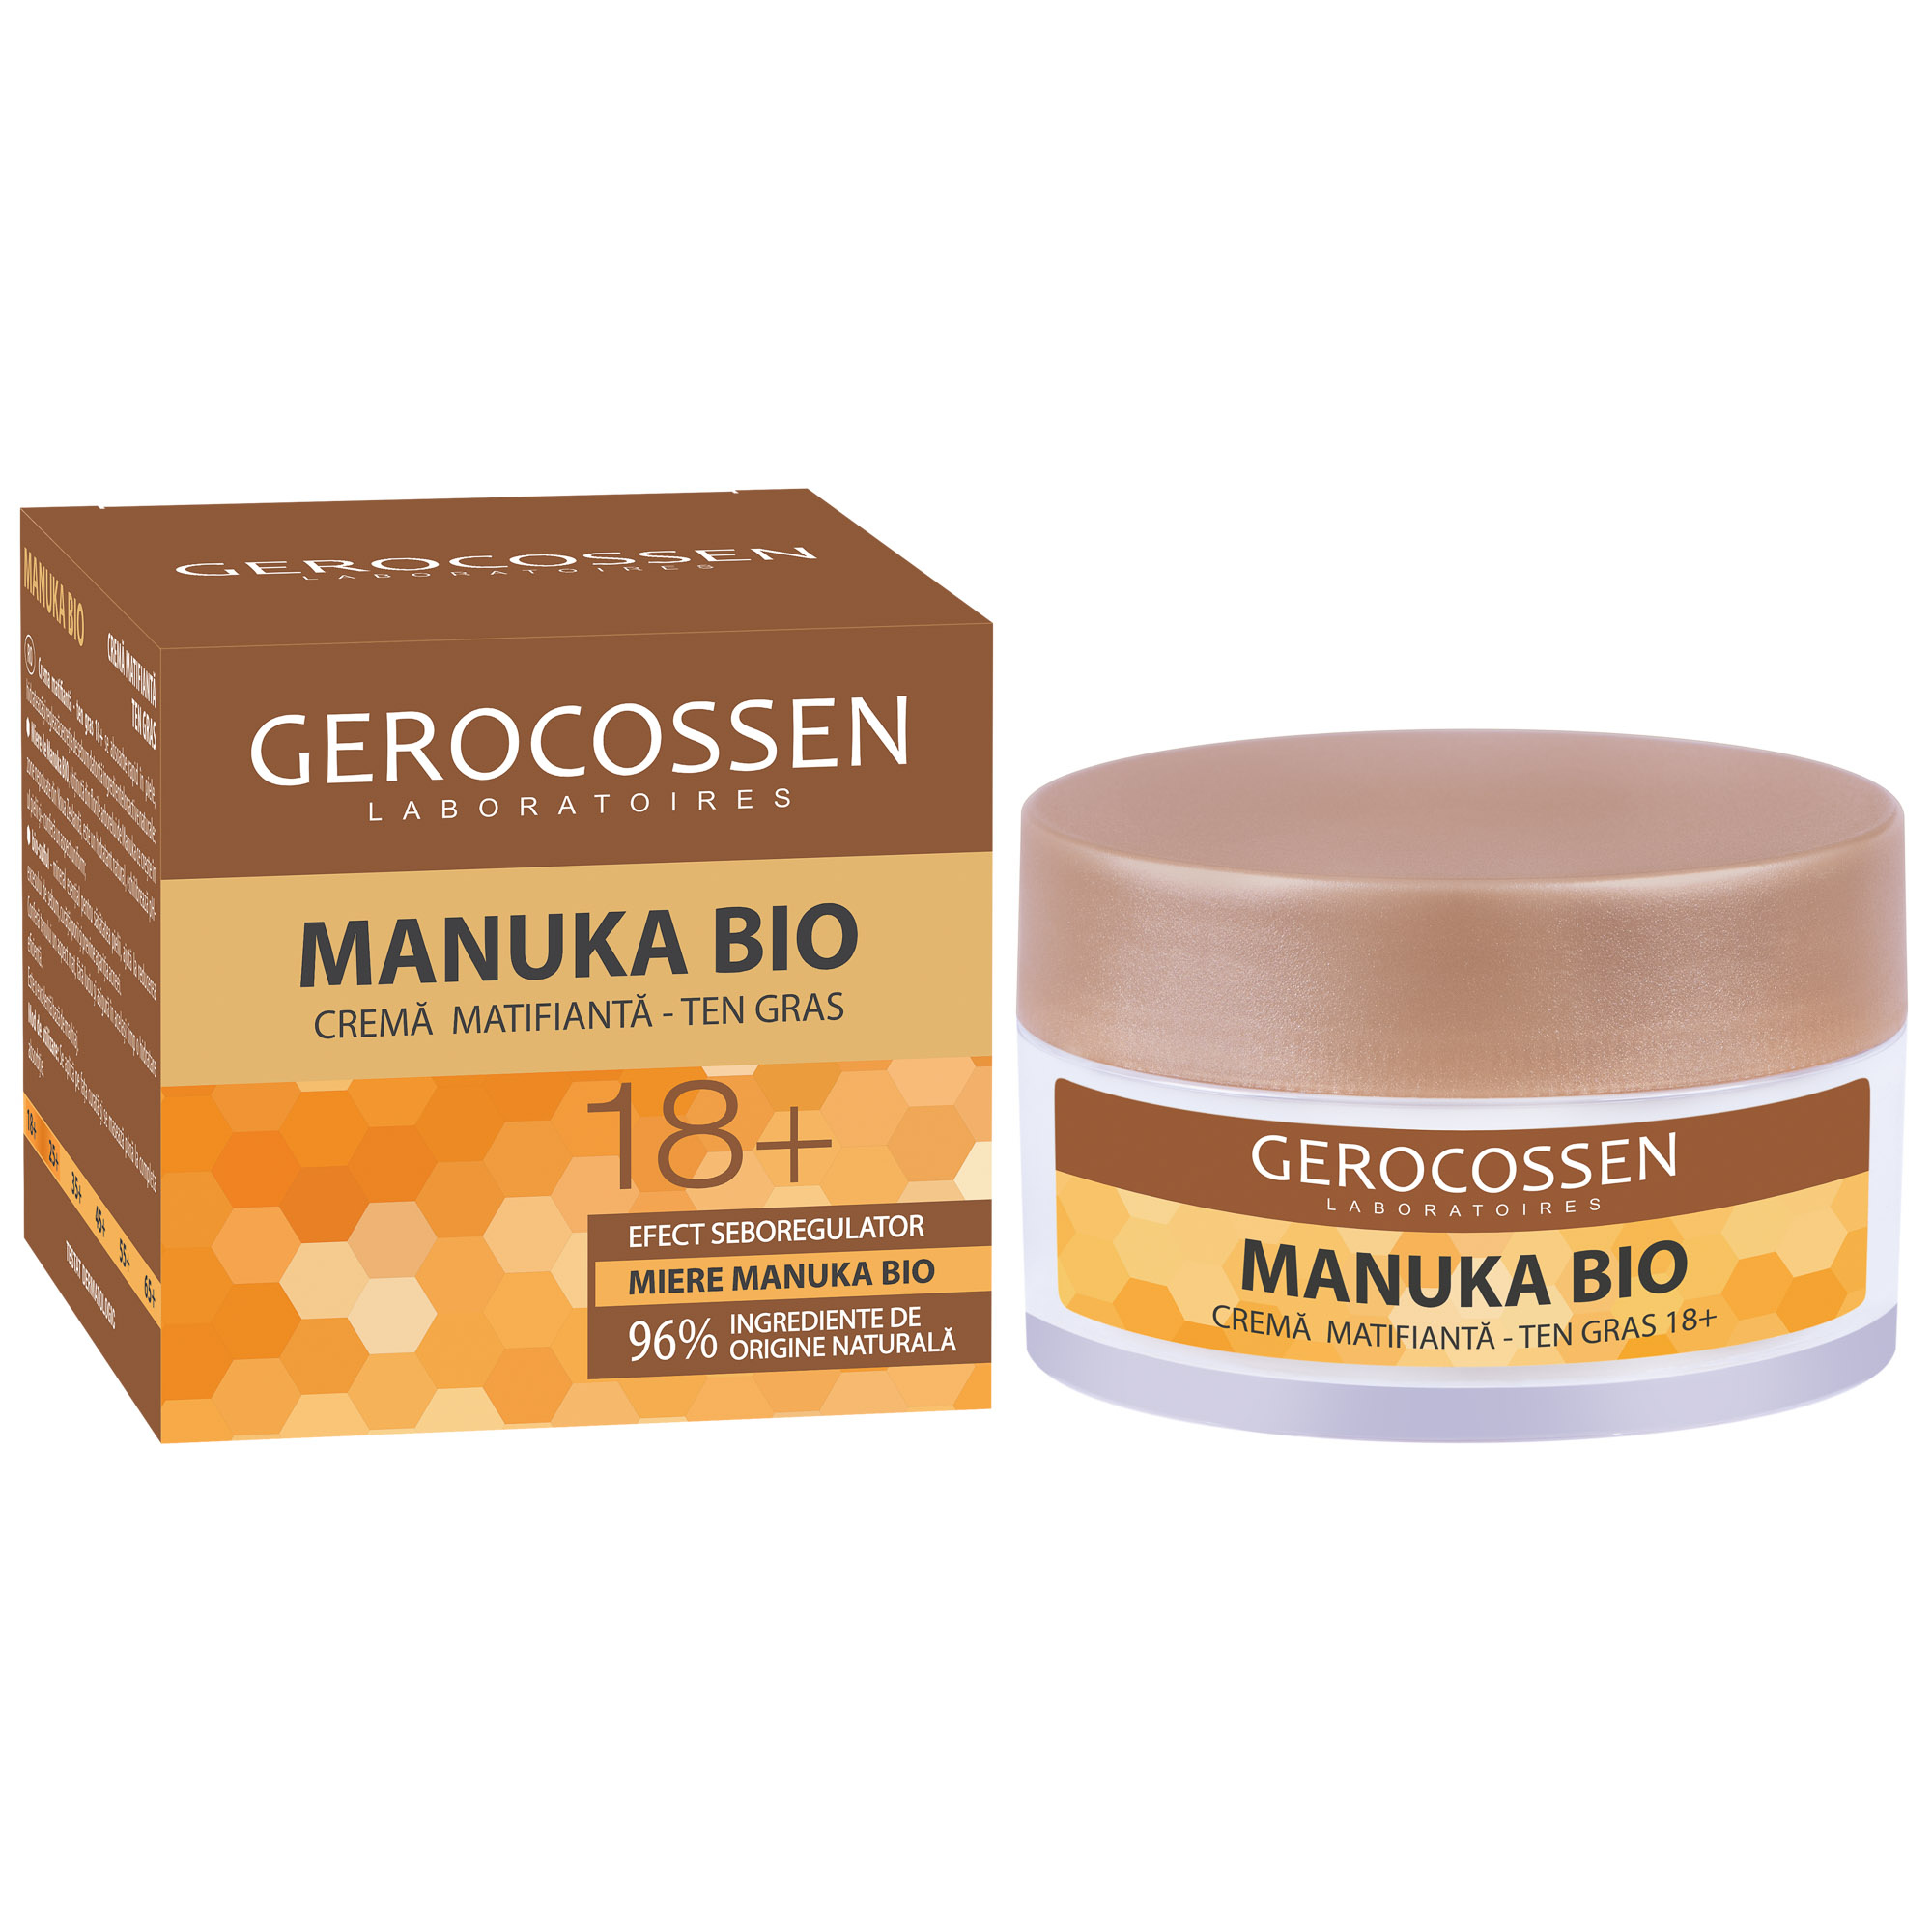 Crema matifianta ten gras 18+, Manuka Bio, 50 ml, Gerocossen